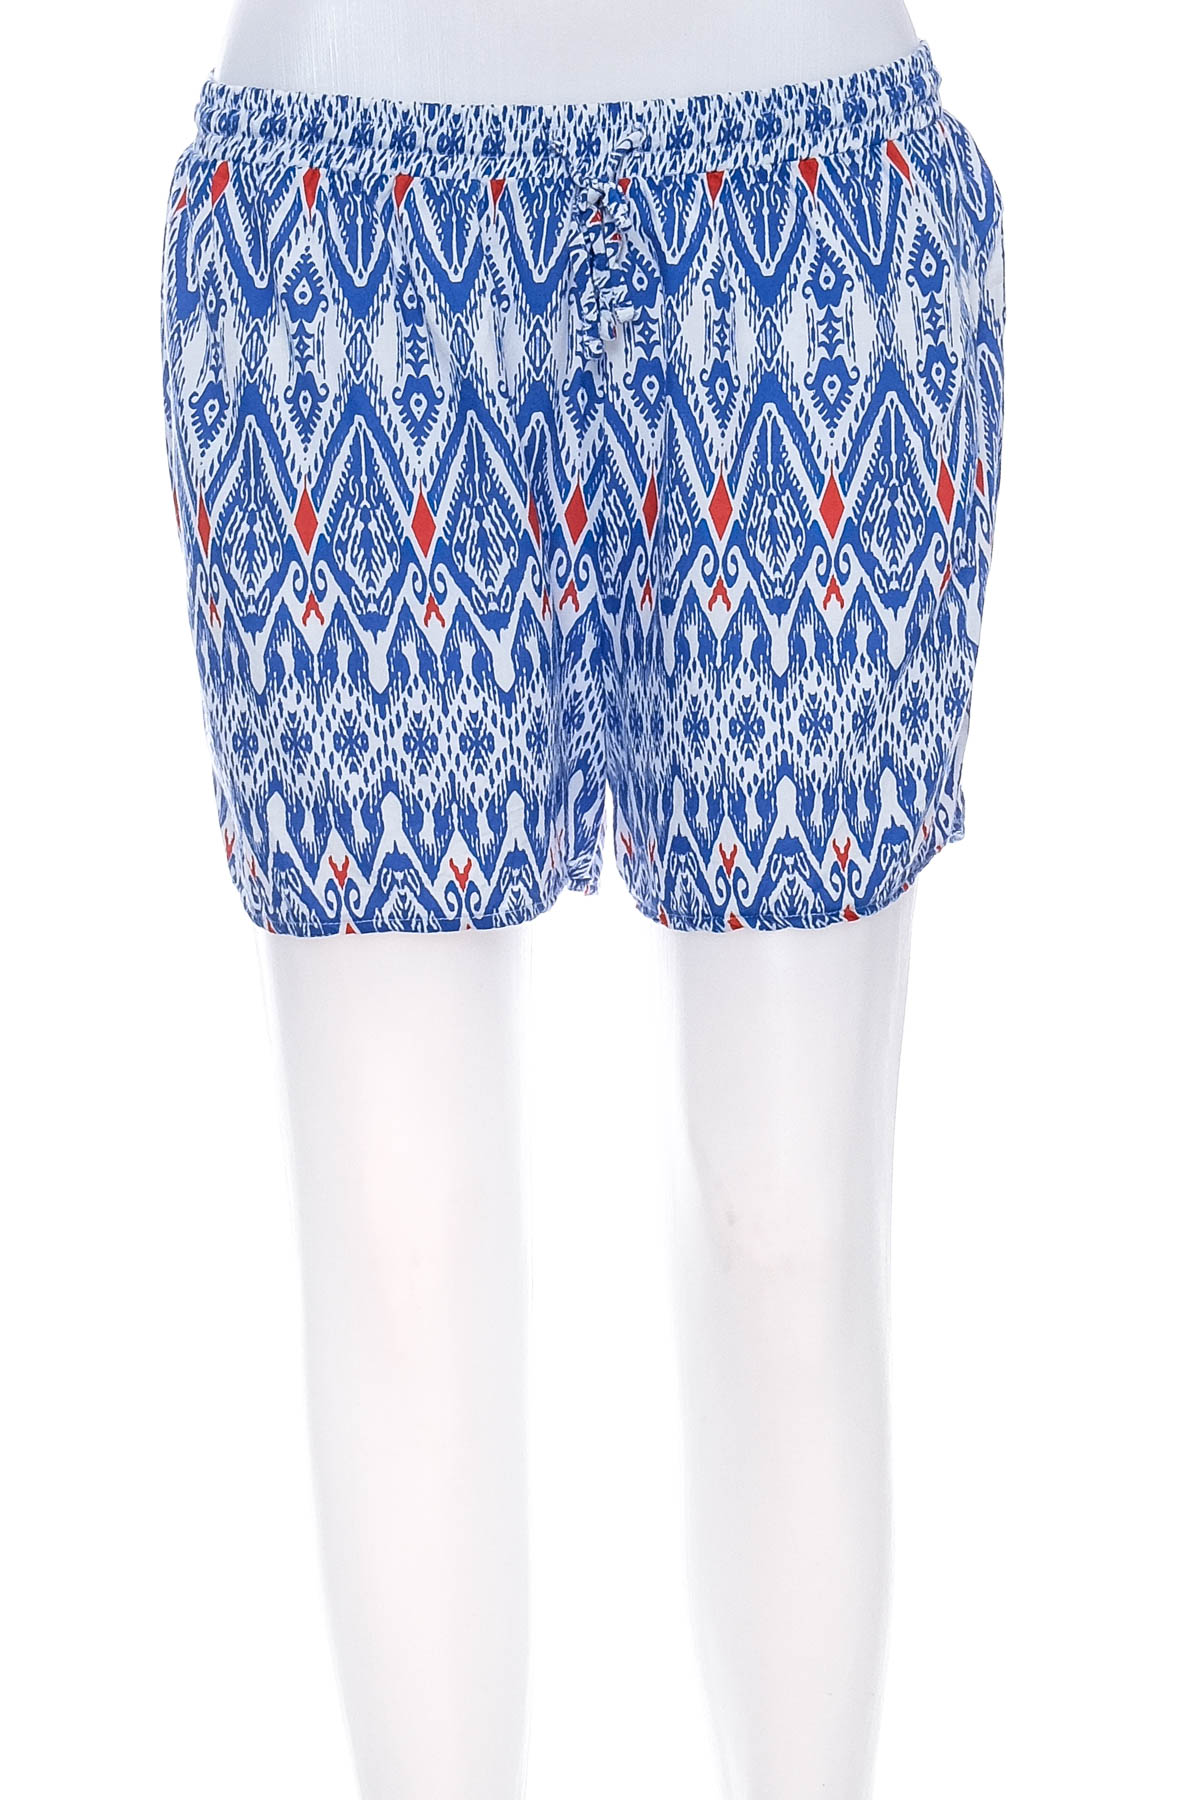 Female shorts - CALZEDONIA - 0